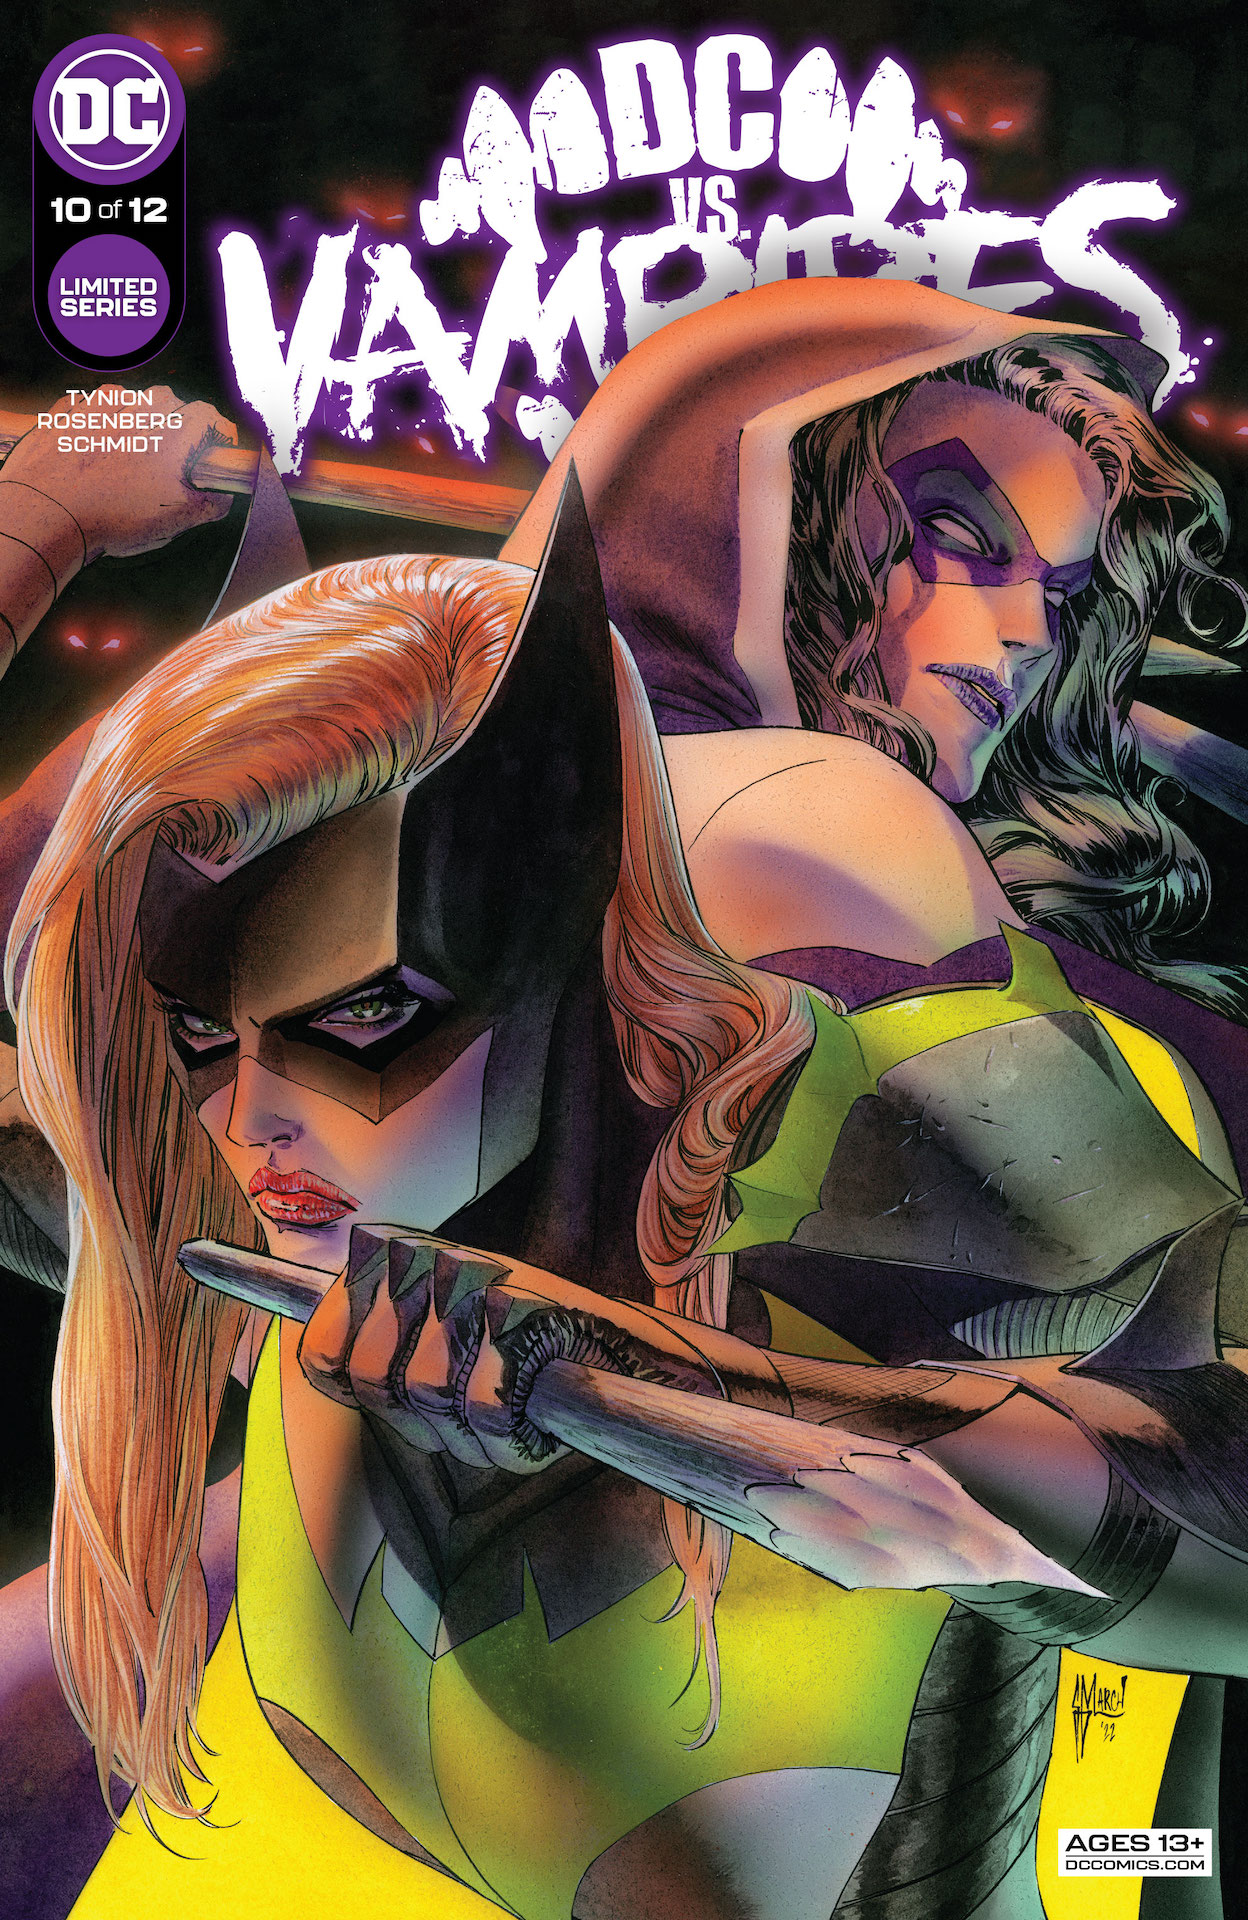 DC Preview: DC vs. Vampires #10